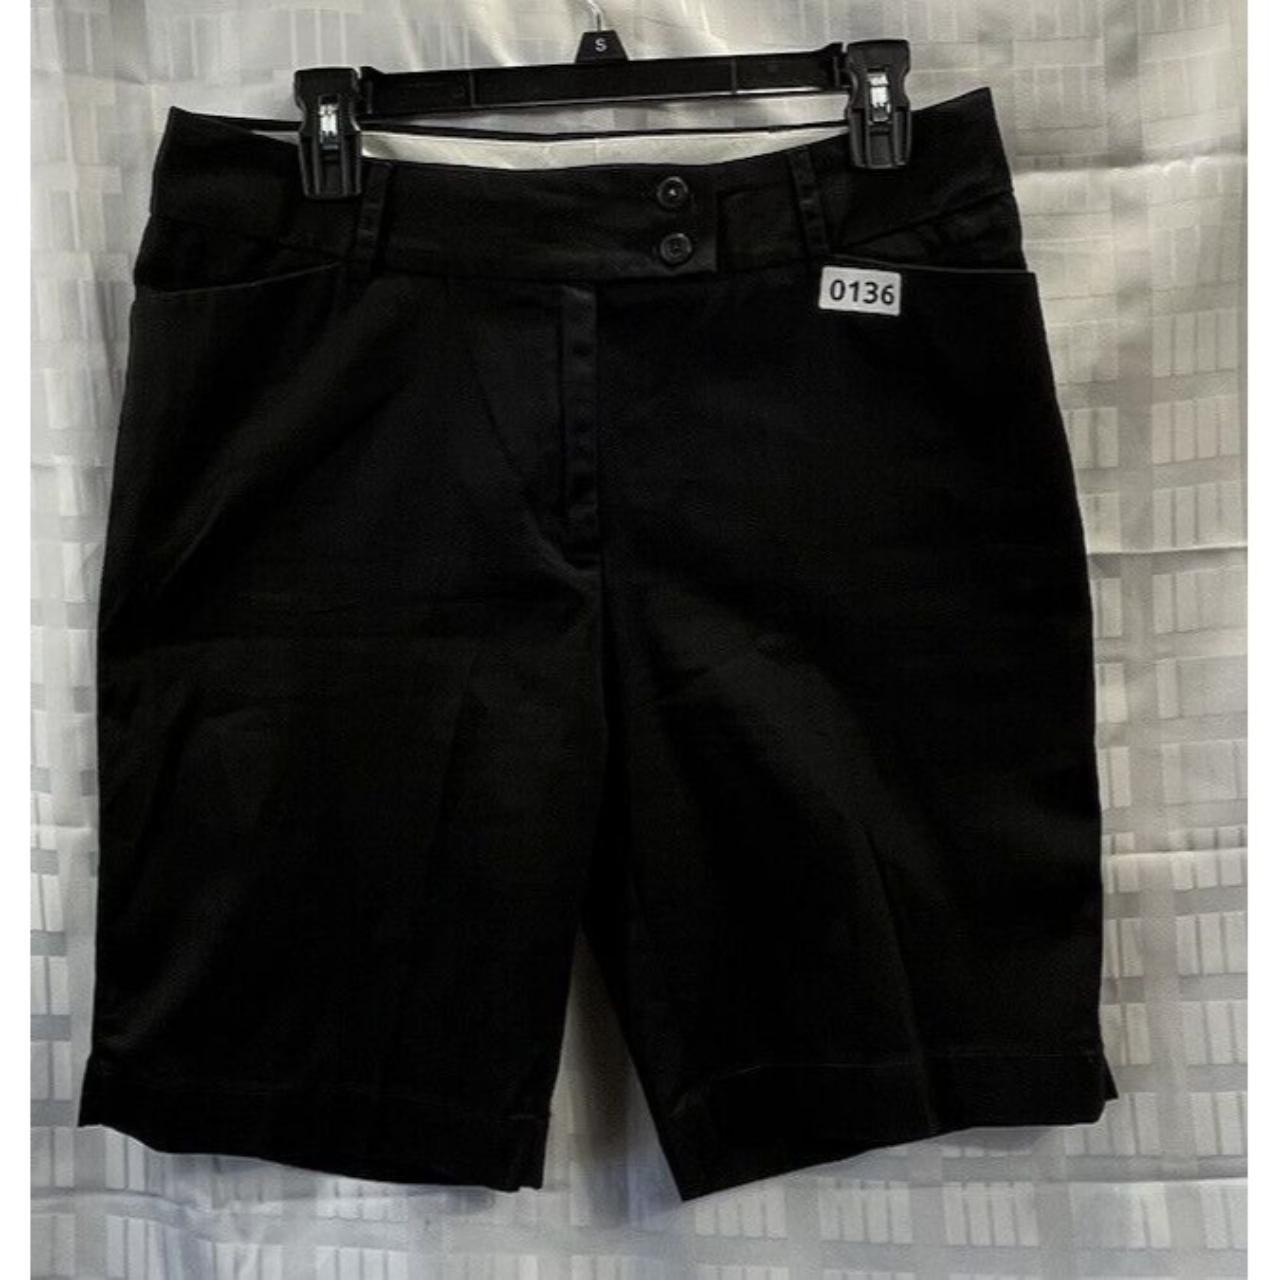 George London Fit Man Shorts Size 8 Color Black Make... - Depop